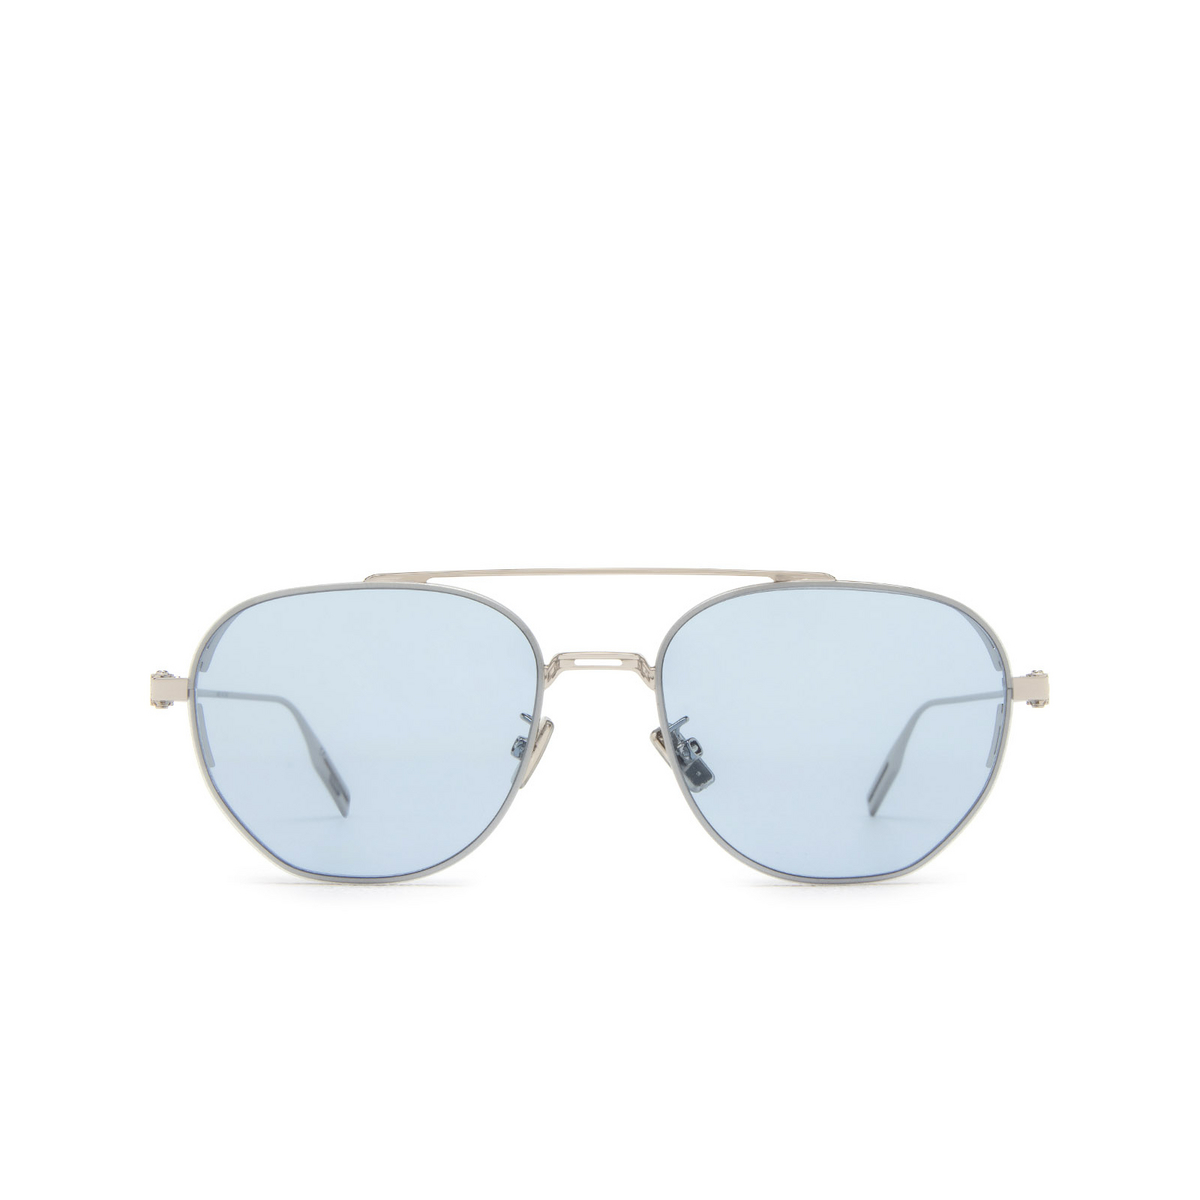 Dior NEODIOR RU Sunglasses F0I0 Silver - front view